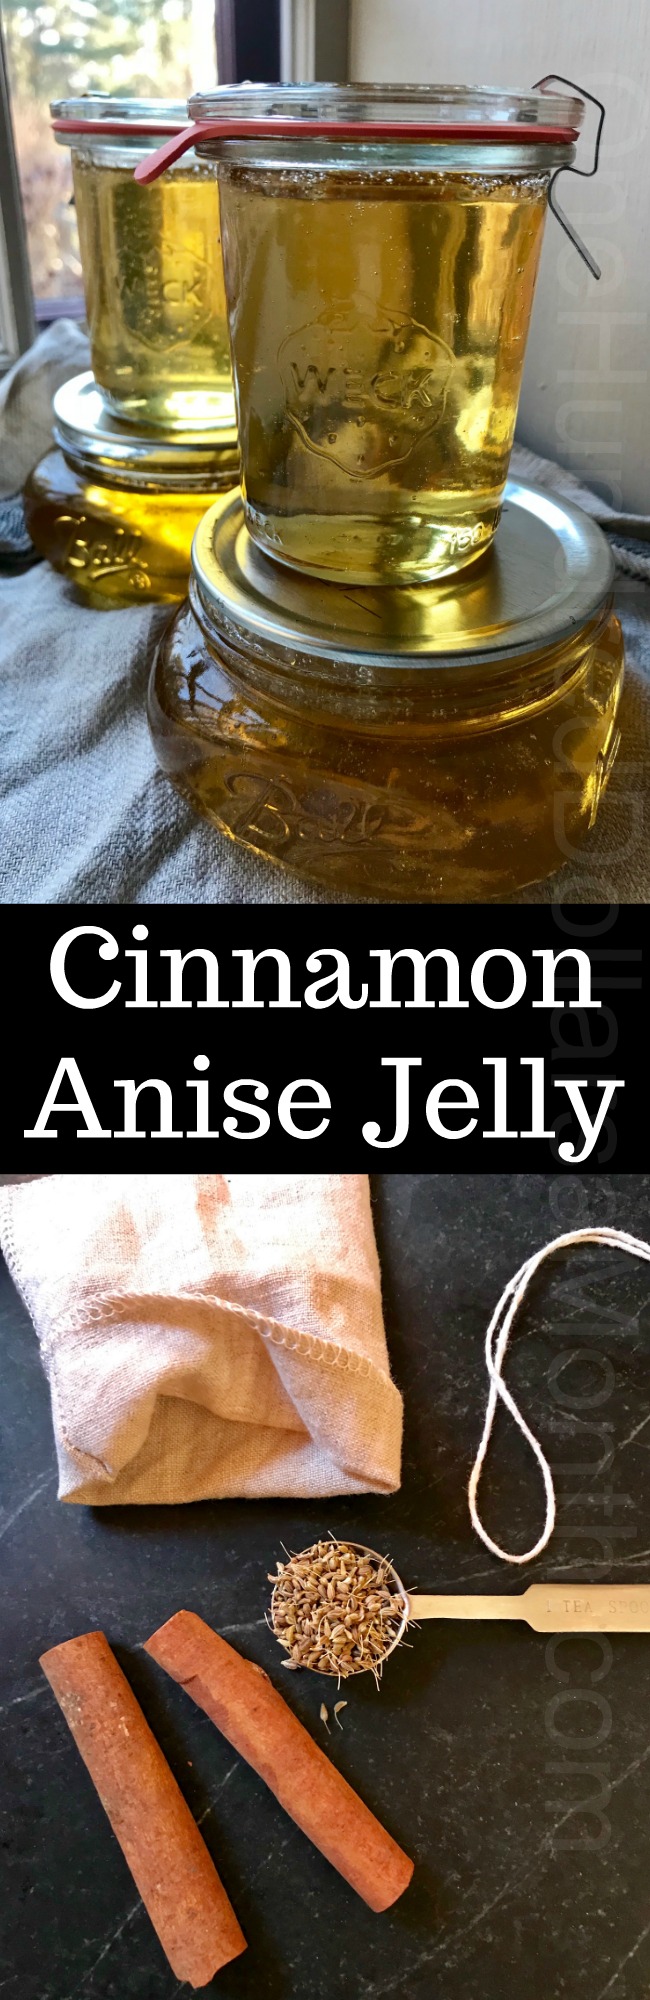 Cinnamon Anise Jelly